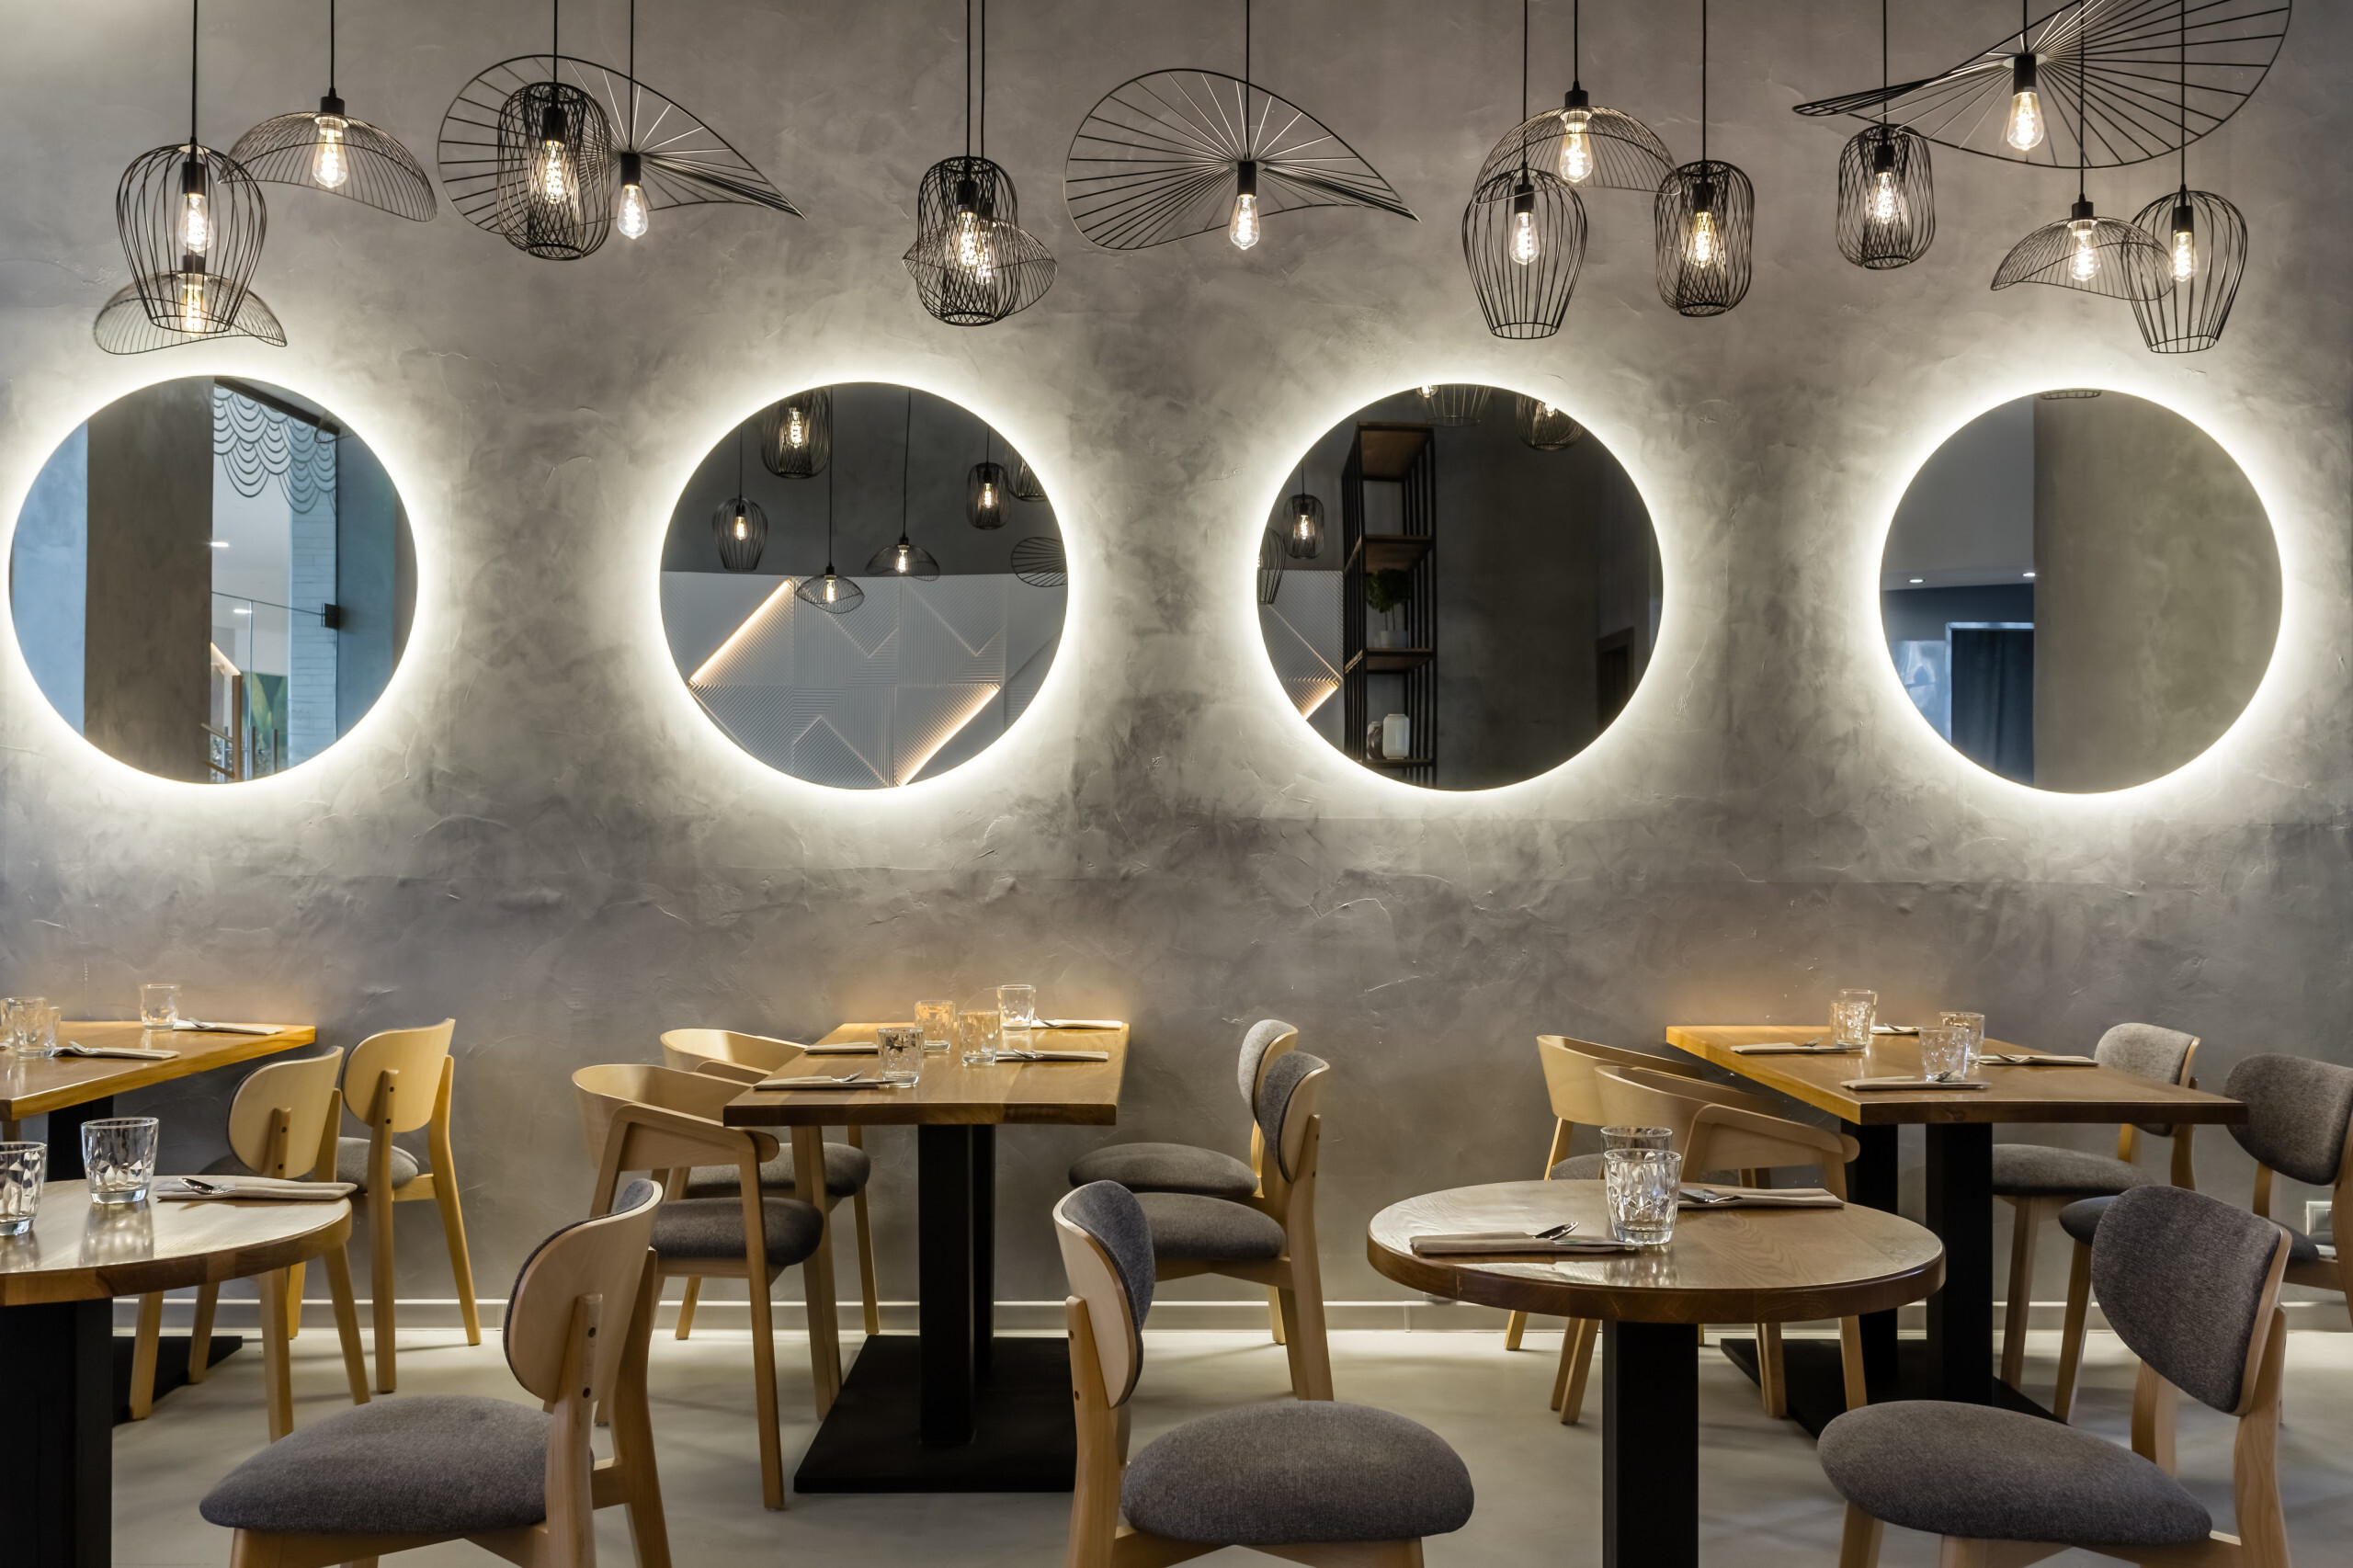 Интерьер кафе и ресторана с подсветкой светодиодной в современном стиле